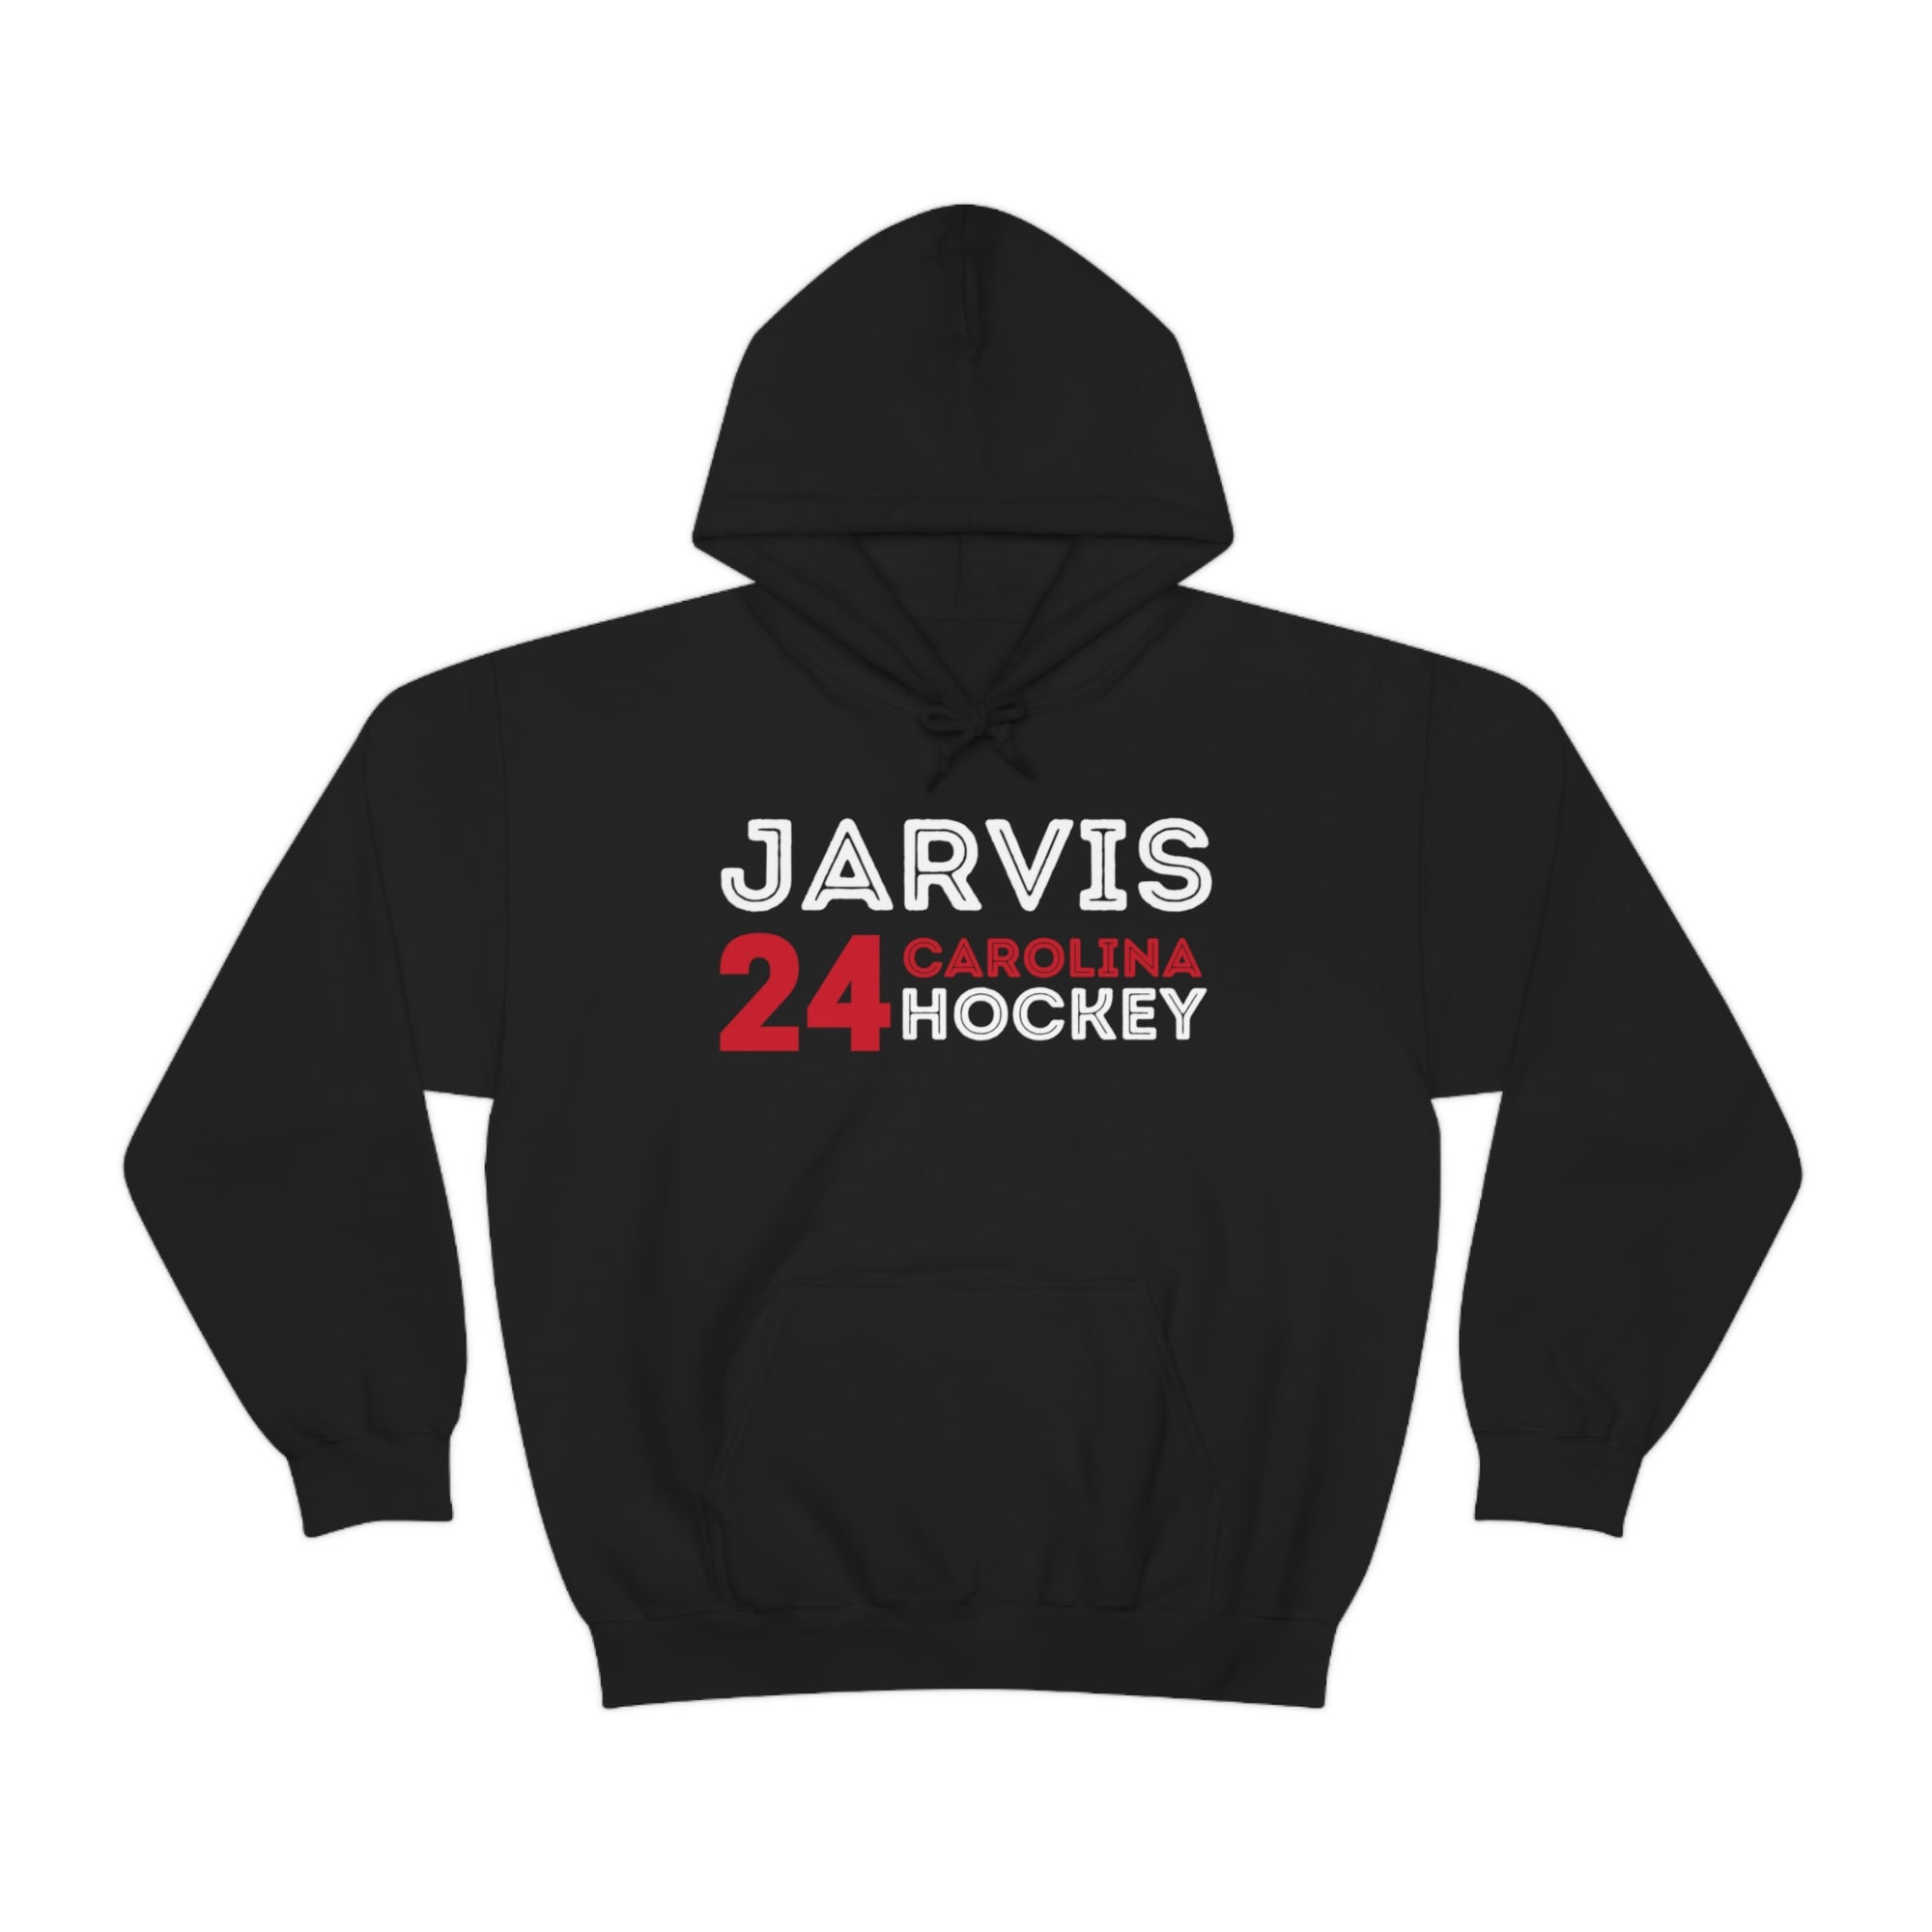 Jarvis 24 Carolina Hockey Unisex Hooded Sweatshirt